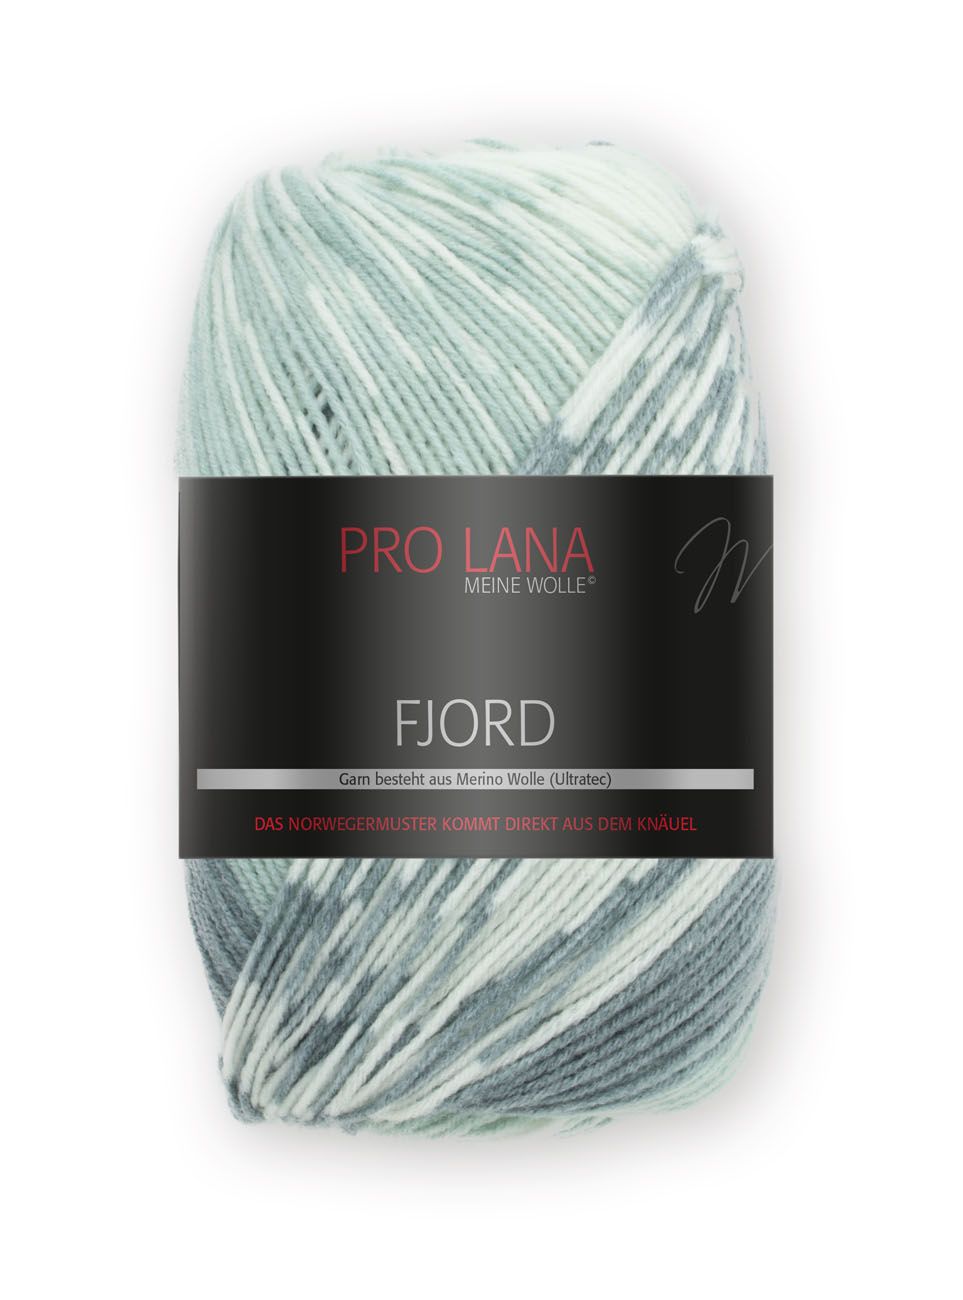 Pro Lana Fjord 100g - Grün / Mint / Weiß 85